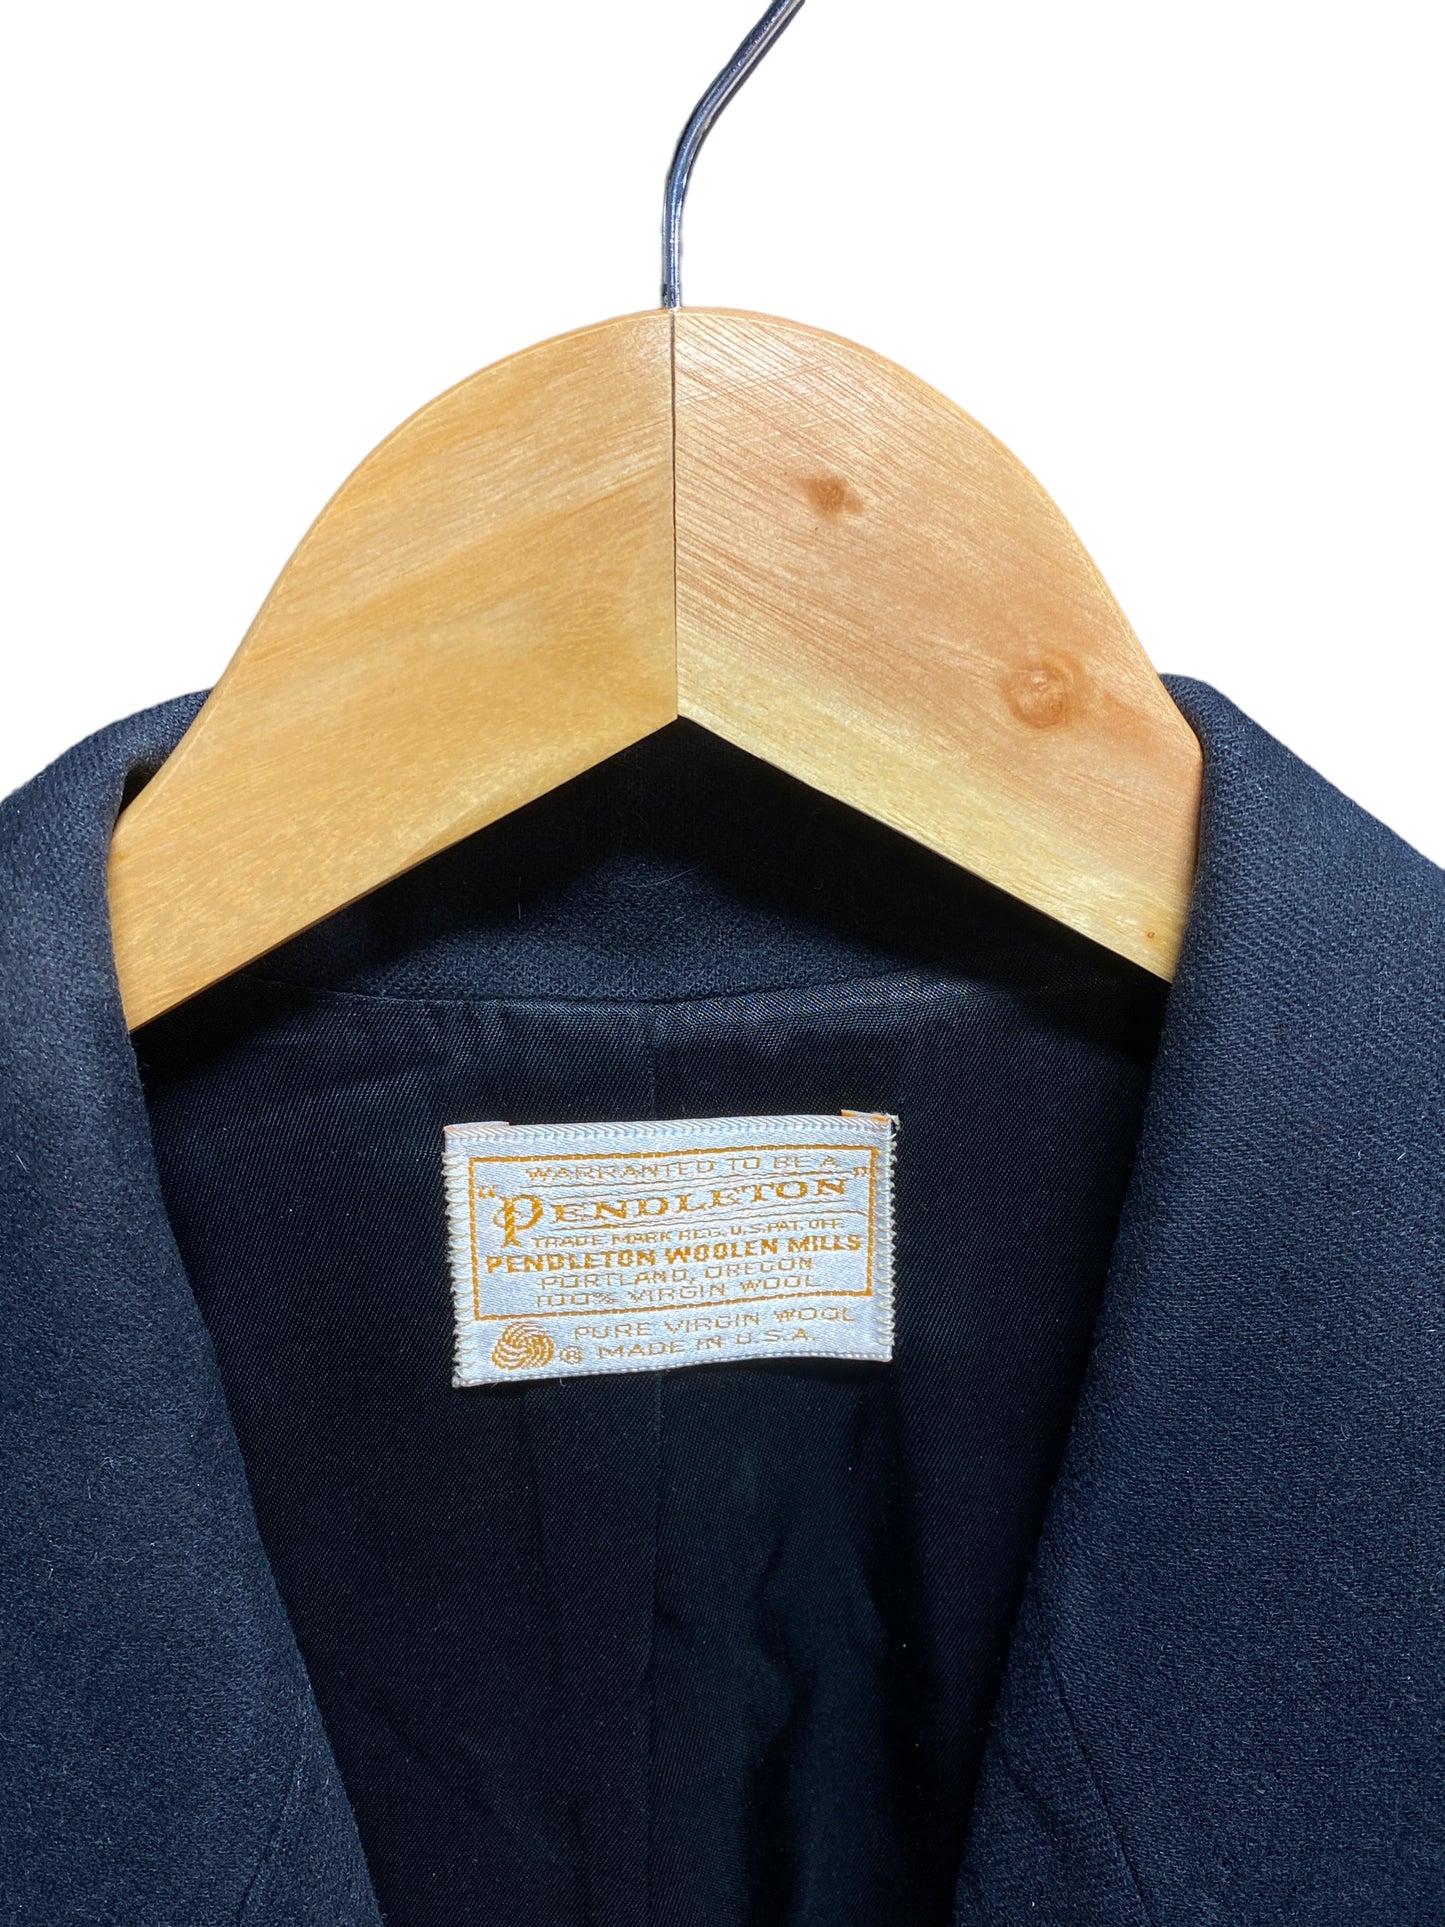 Vintage Pendleton Made in USA Black Wool Blazer Size S/M